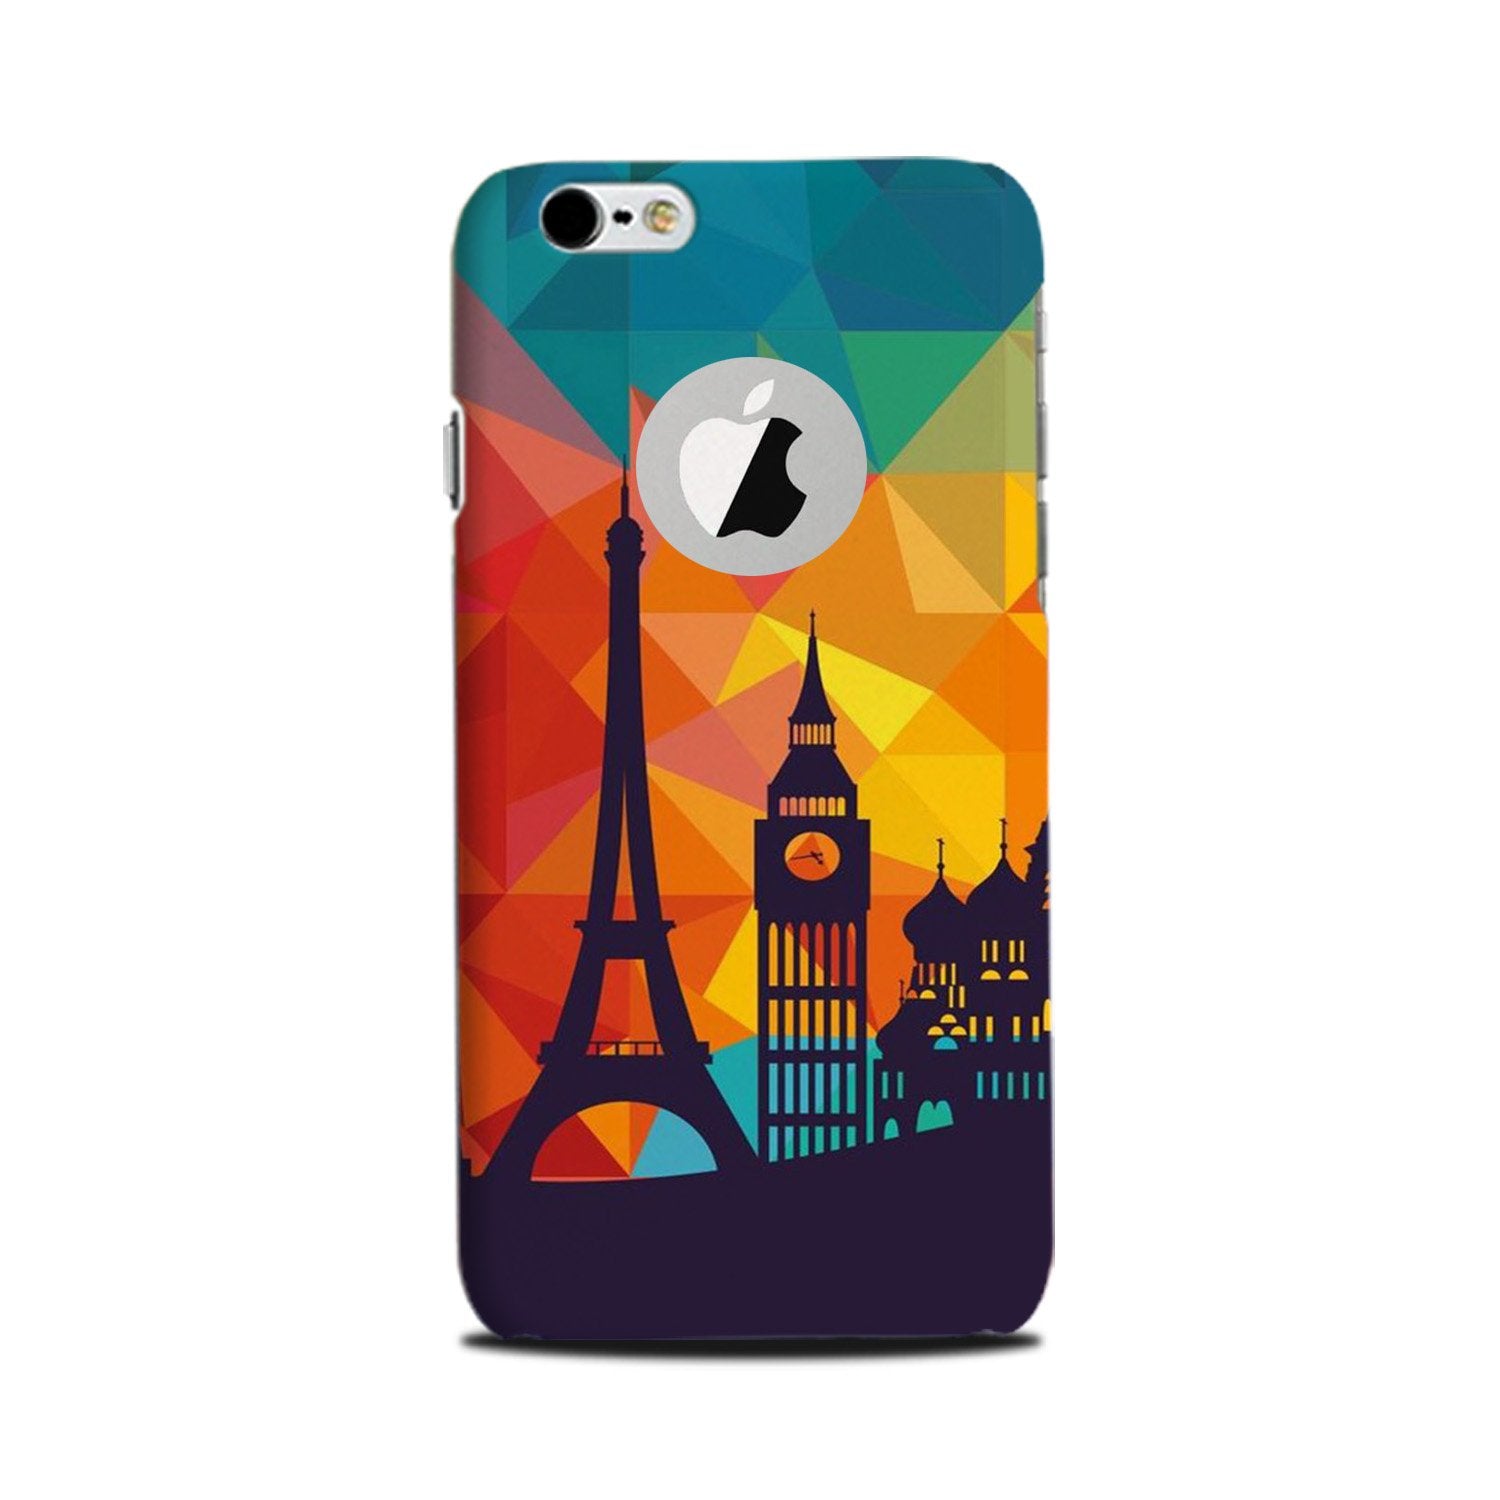 Eiffel Tower2 Case for iPhone 6 Plus / 6s Plus logo cut 